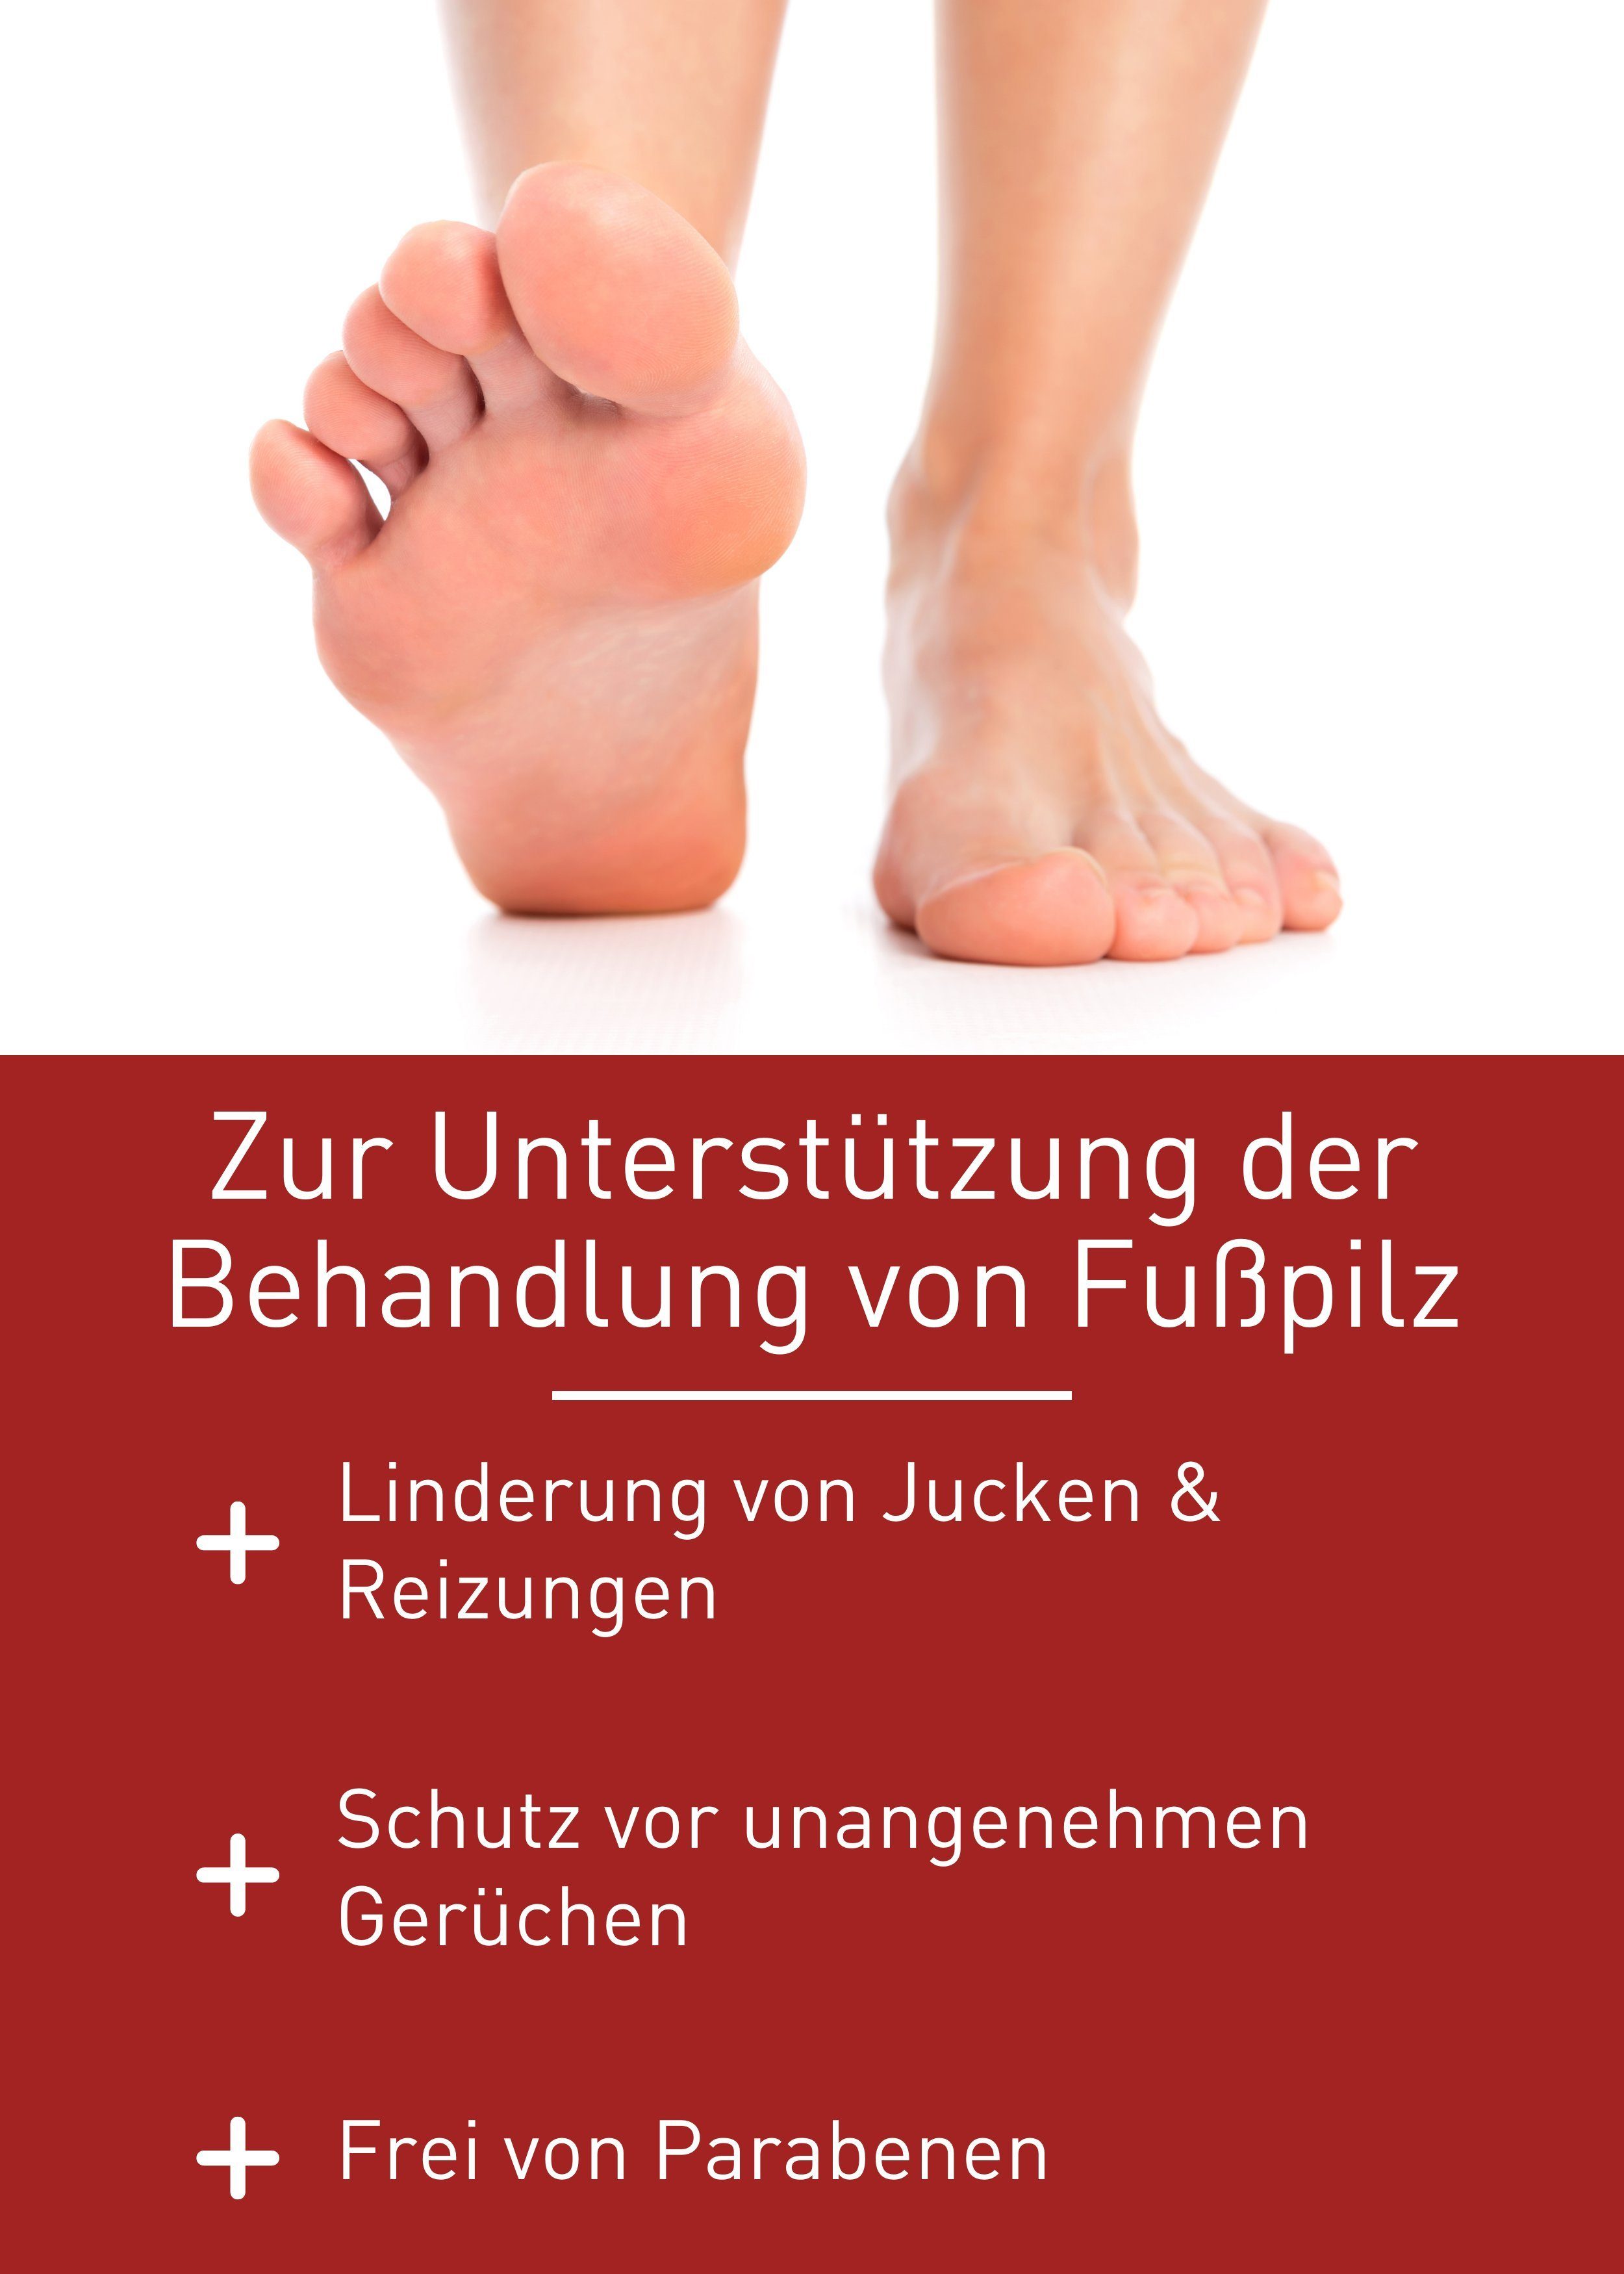 Rezeptur Gel Fußpilz, Fußpilz Healthcare N1 Medizinprodukt, patentierte Fußpflegecreme Behandlung von zur